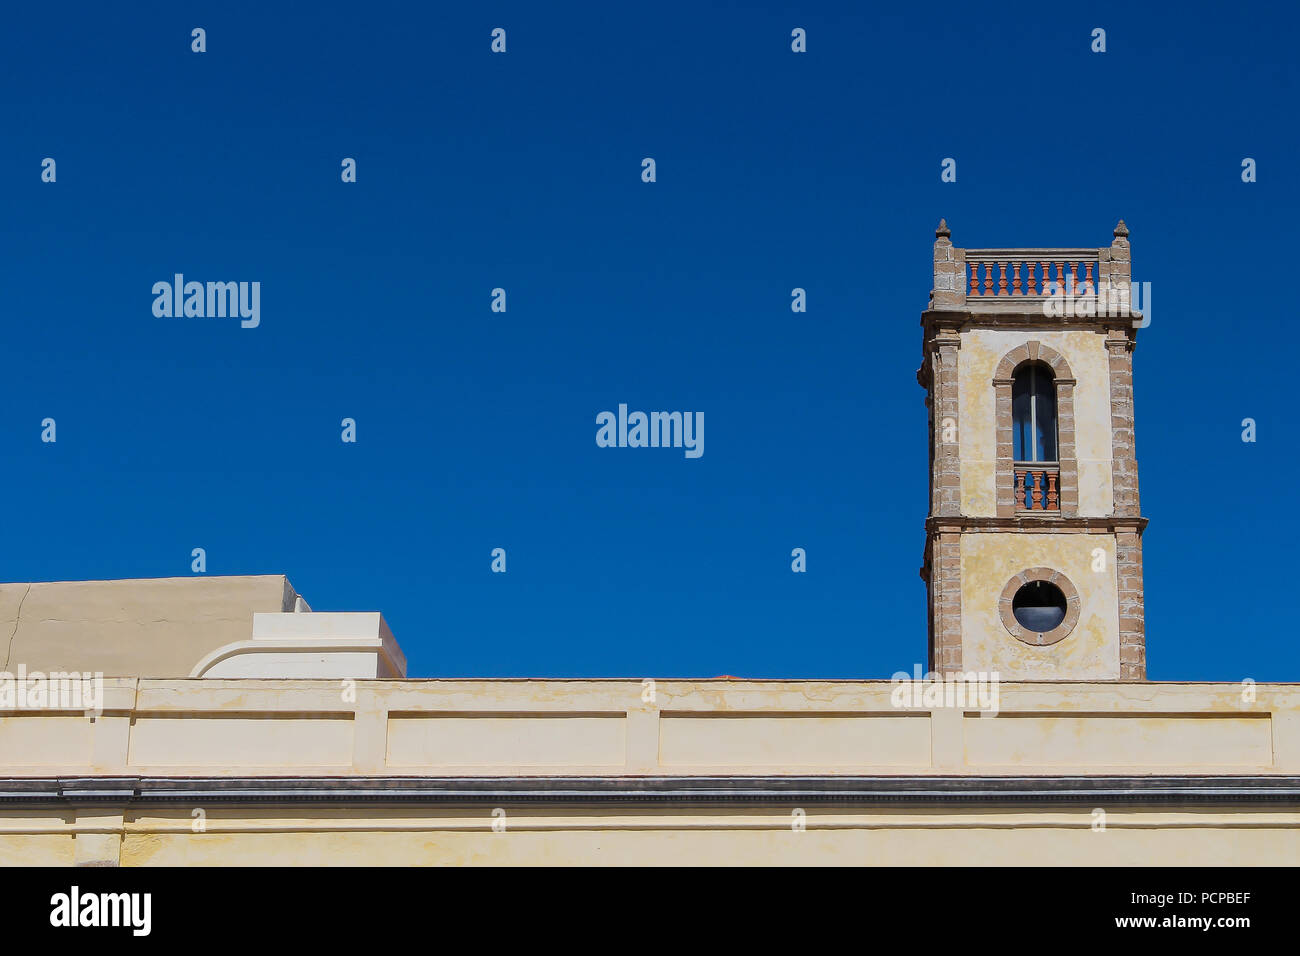 Ligne de la partie supérieure du bâtiment et une tour. L'architecture portugaise dans la forteresse El Jadida, Maroc. Ciel bleu clair lumineux. Banque D'Images